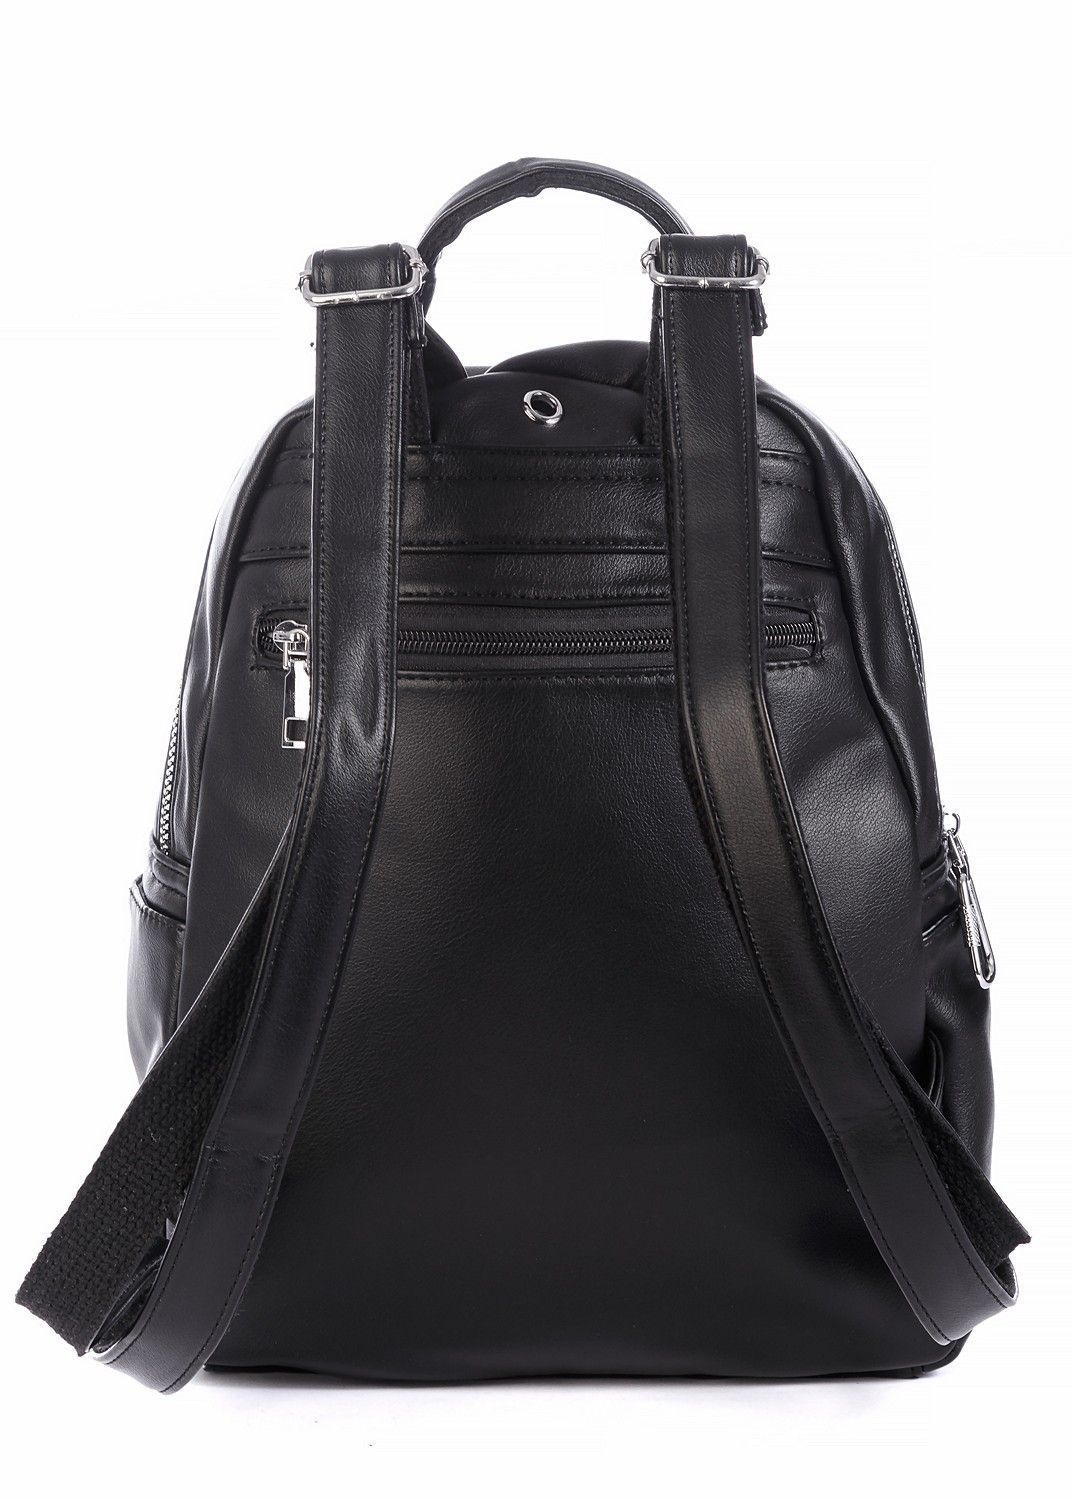 Рюкзак женский городской, однотонный черный, из искуссвтенной кожи, 7л.